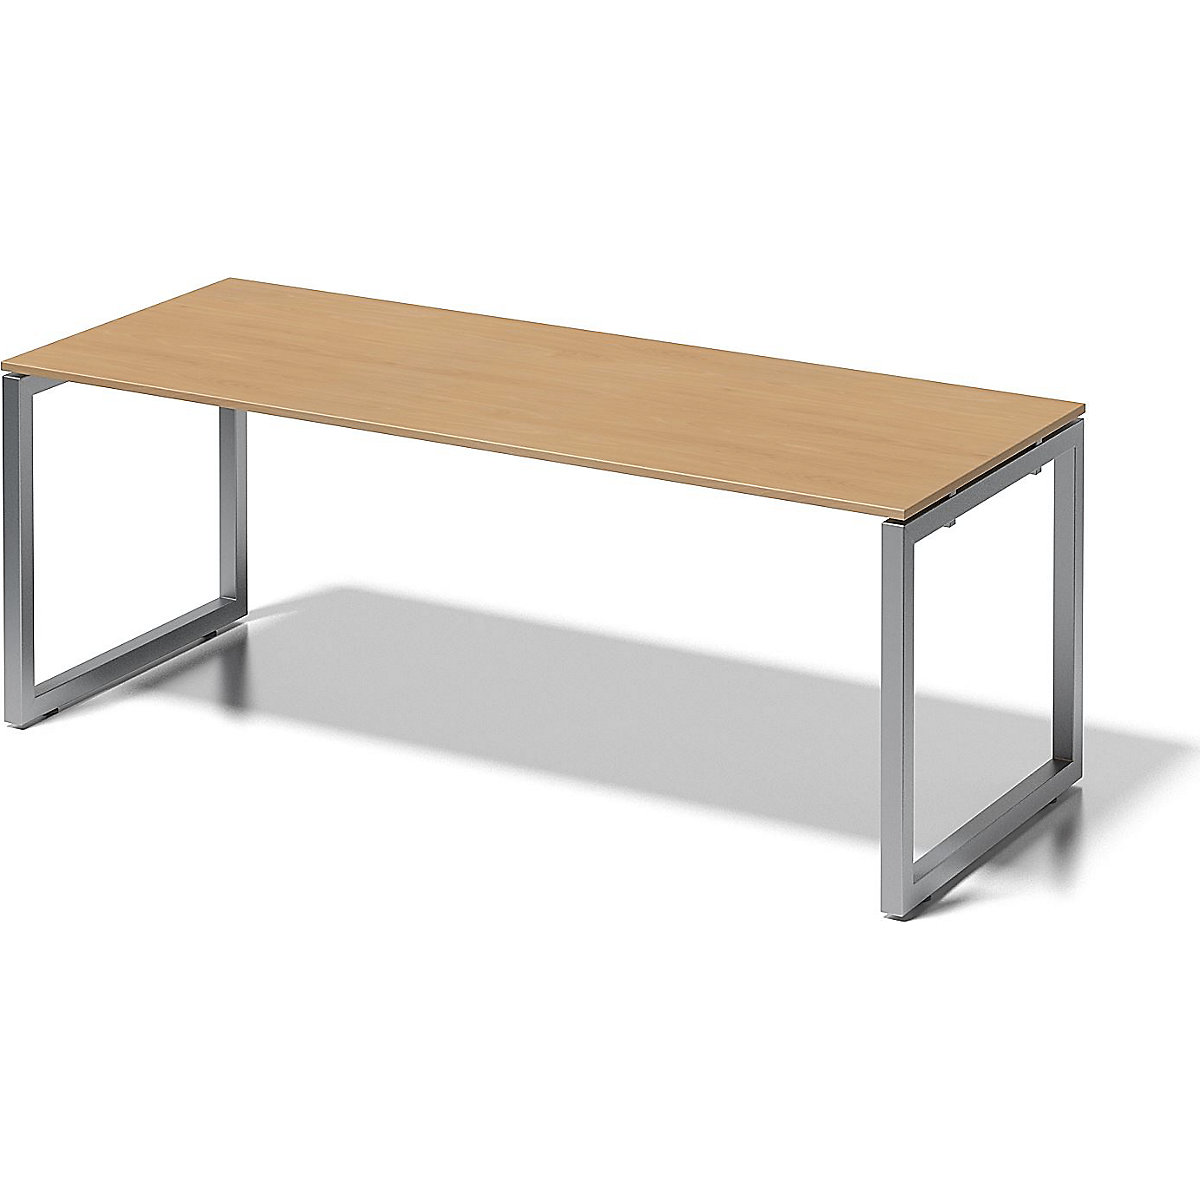 Písací stôl CITO, podstavec v tvare O – BISLEY, v x š x h 740 x 2000 x 800 mm, podstavec strieborná, doska stola buk-8